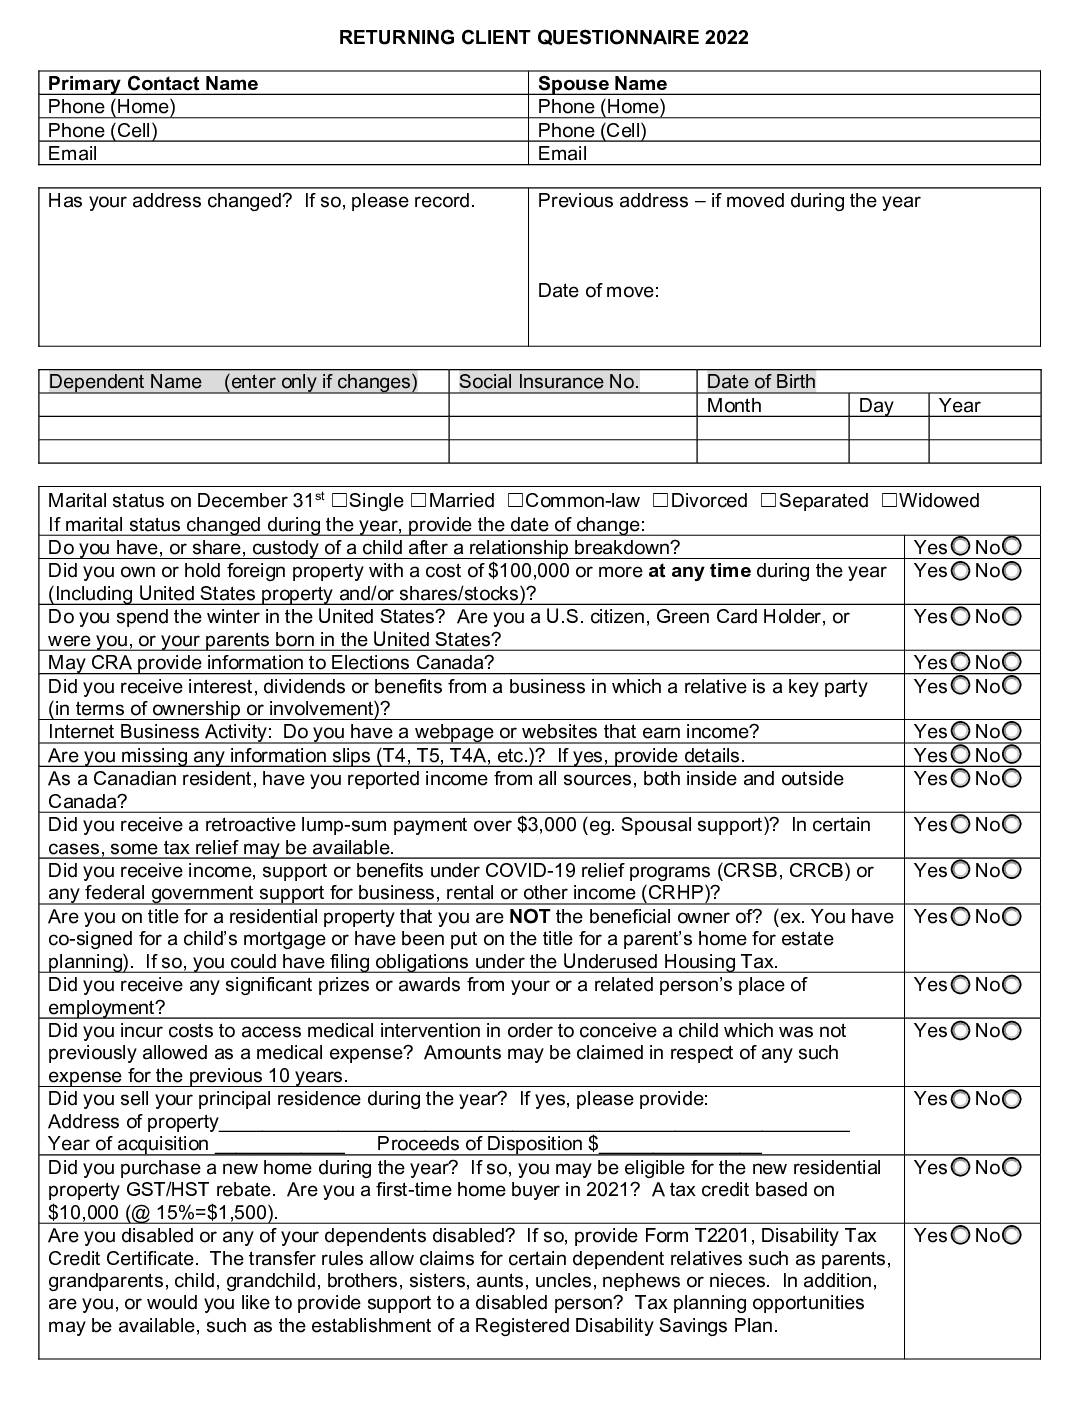 2022 Returning Client Questionnaire